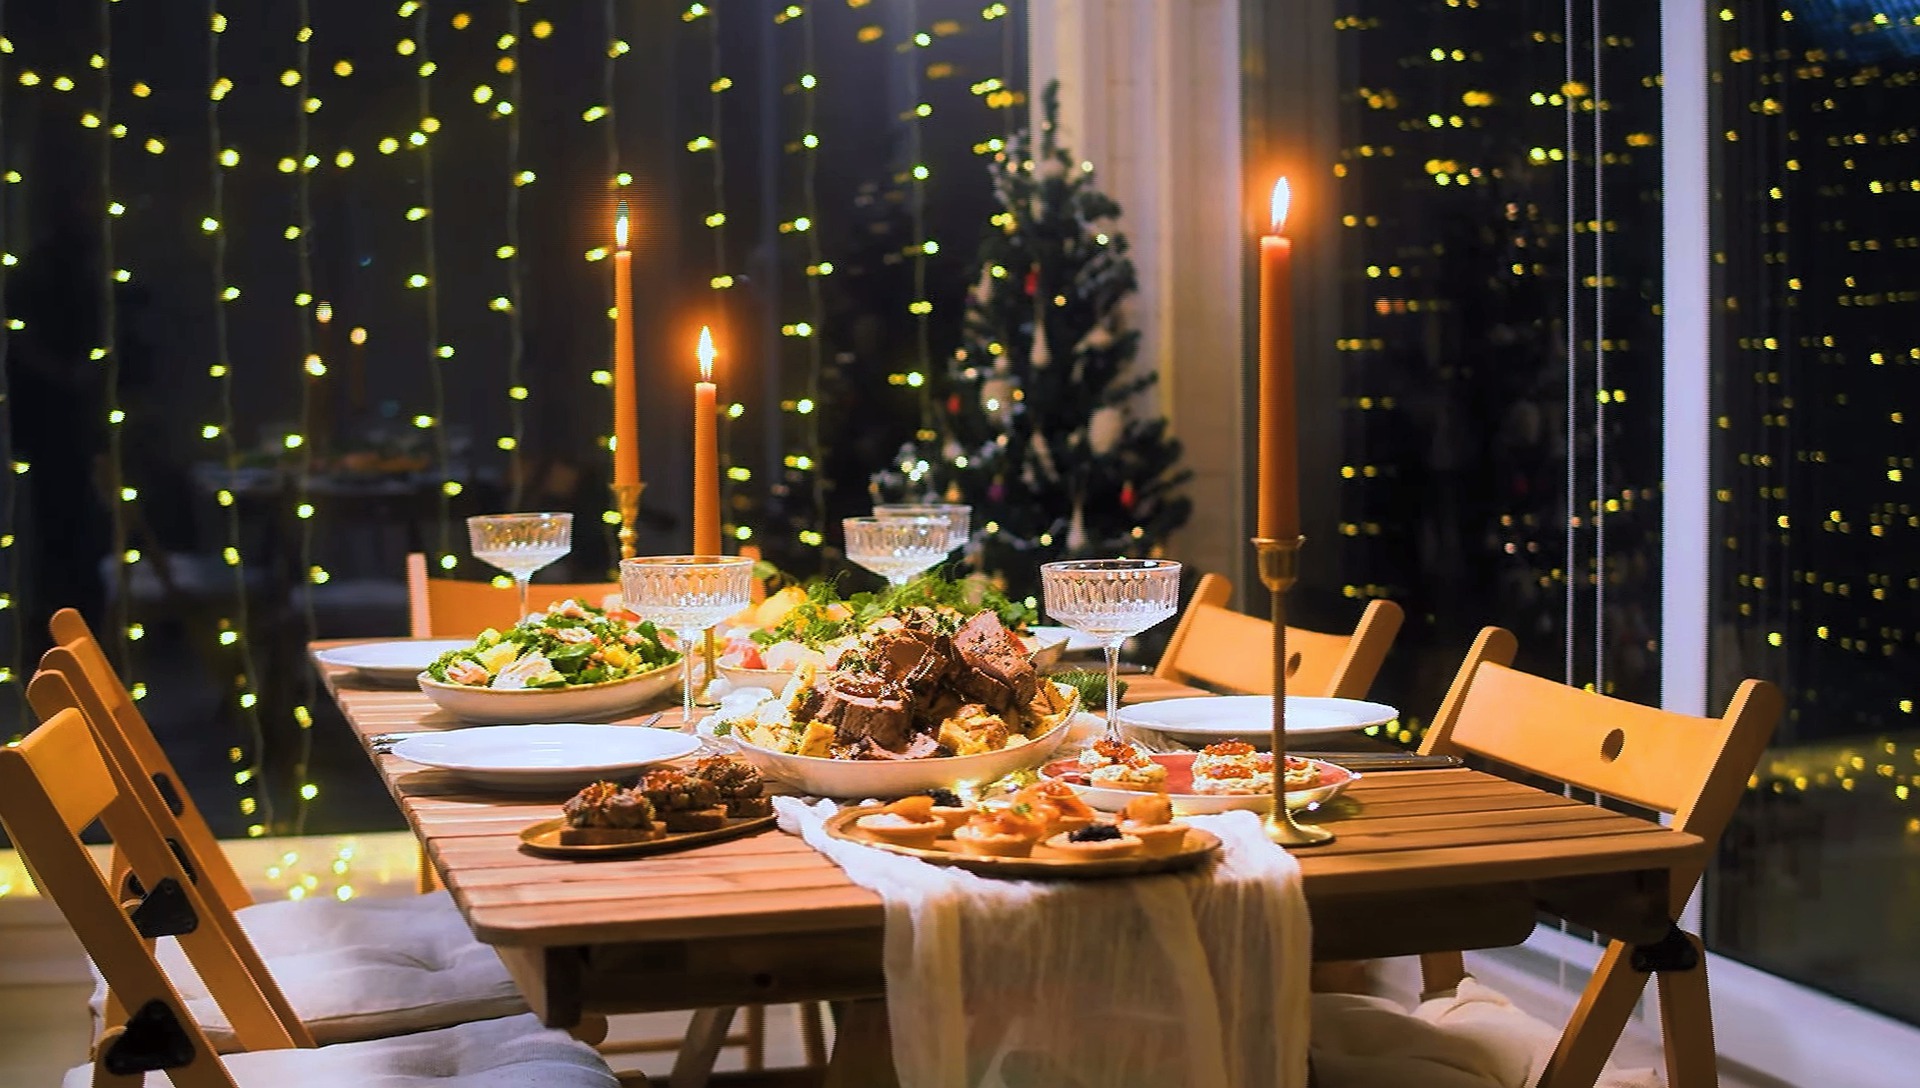 Ce se mănâncă în noaptea de Revelion. Idei de meniu pentru masa de Anul Nou